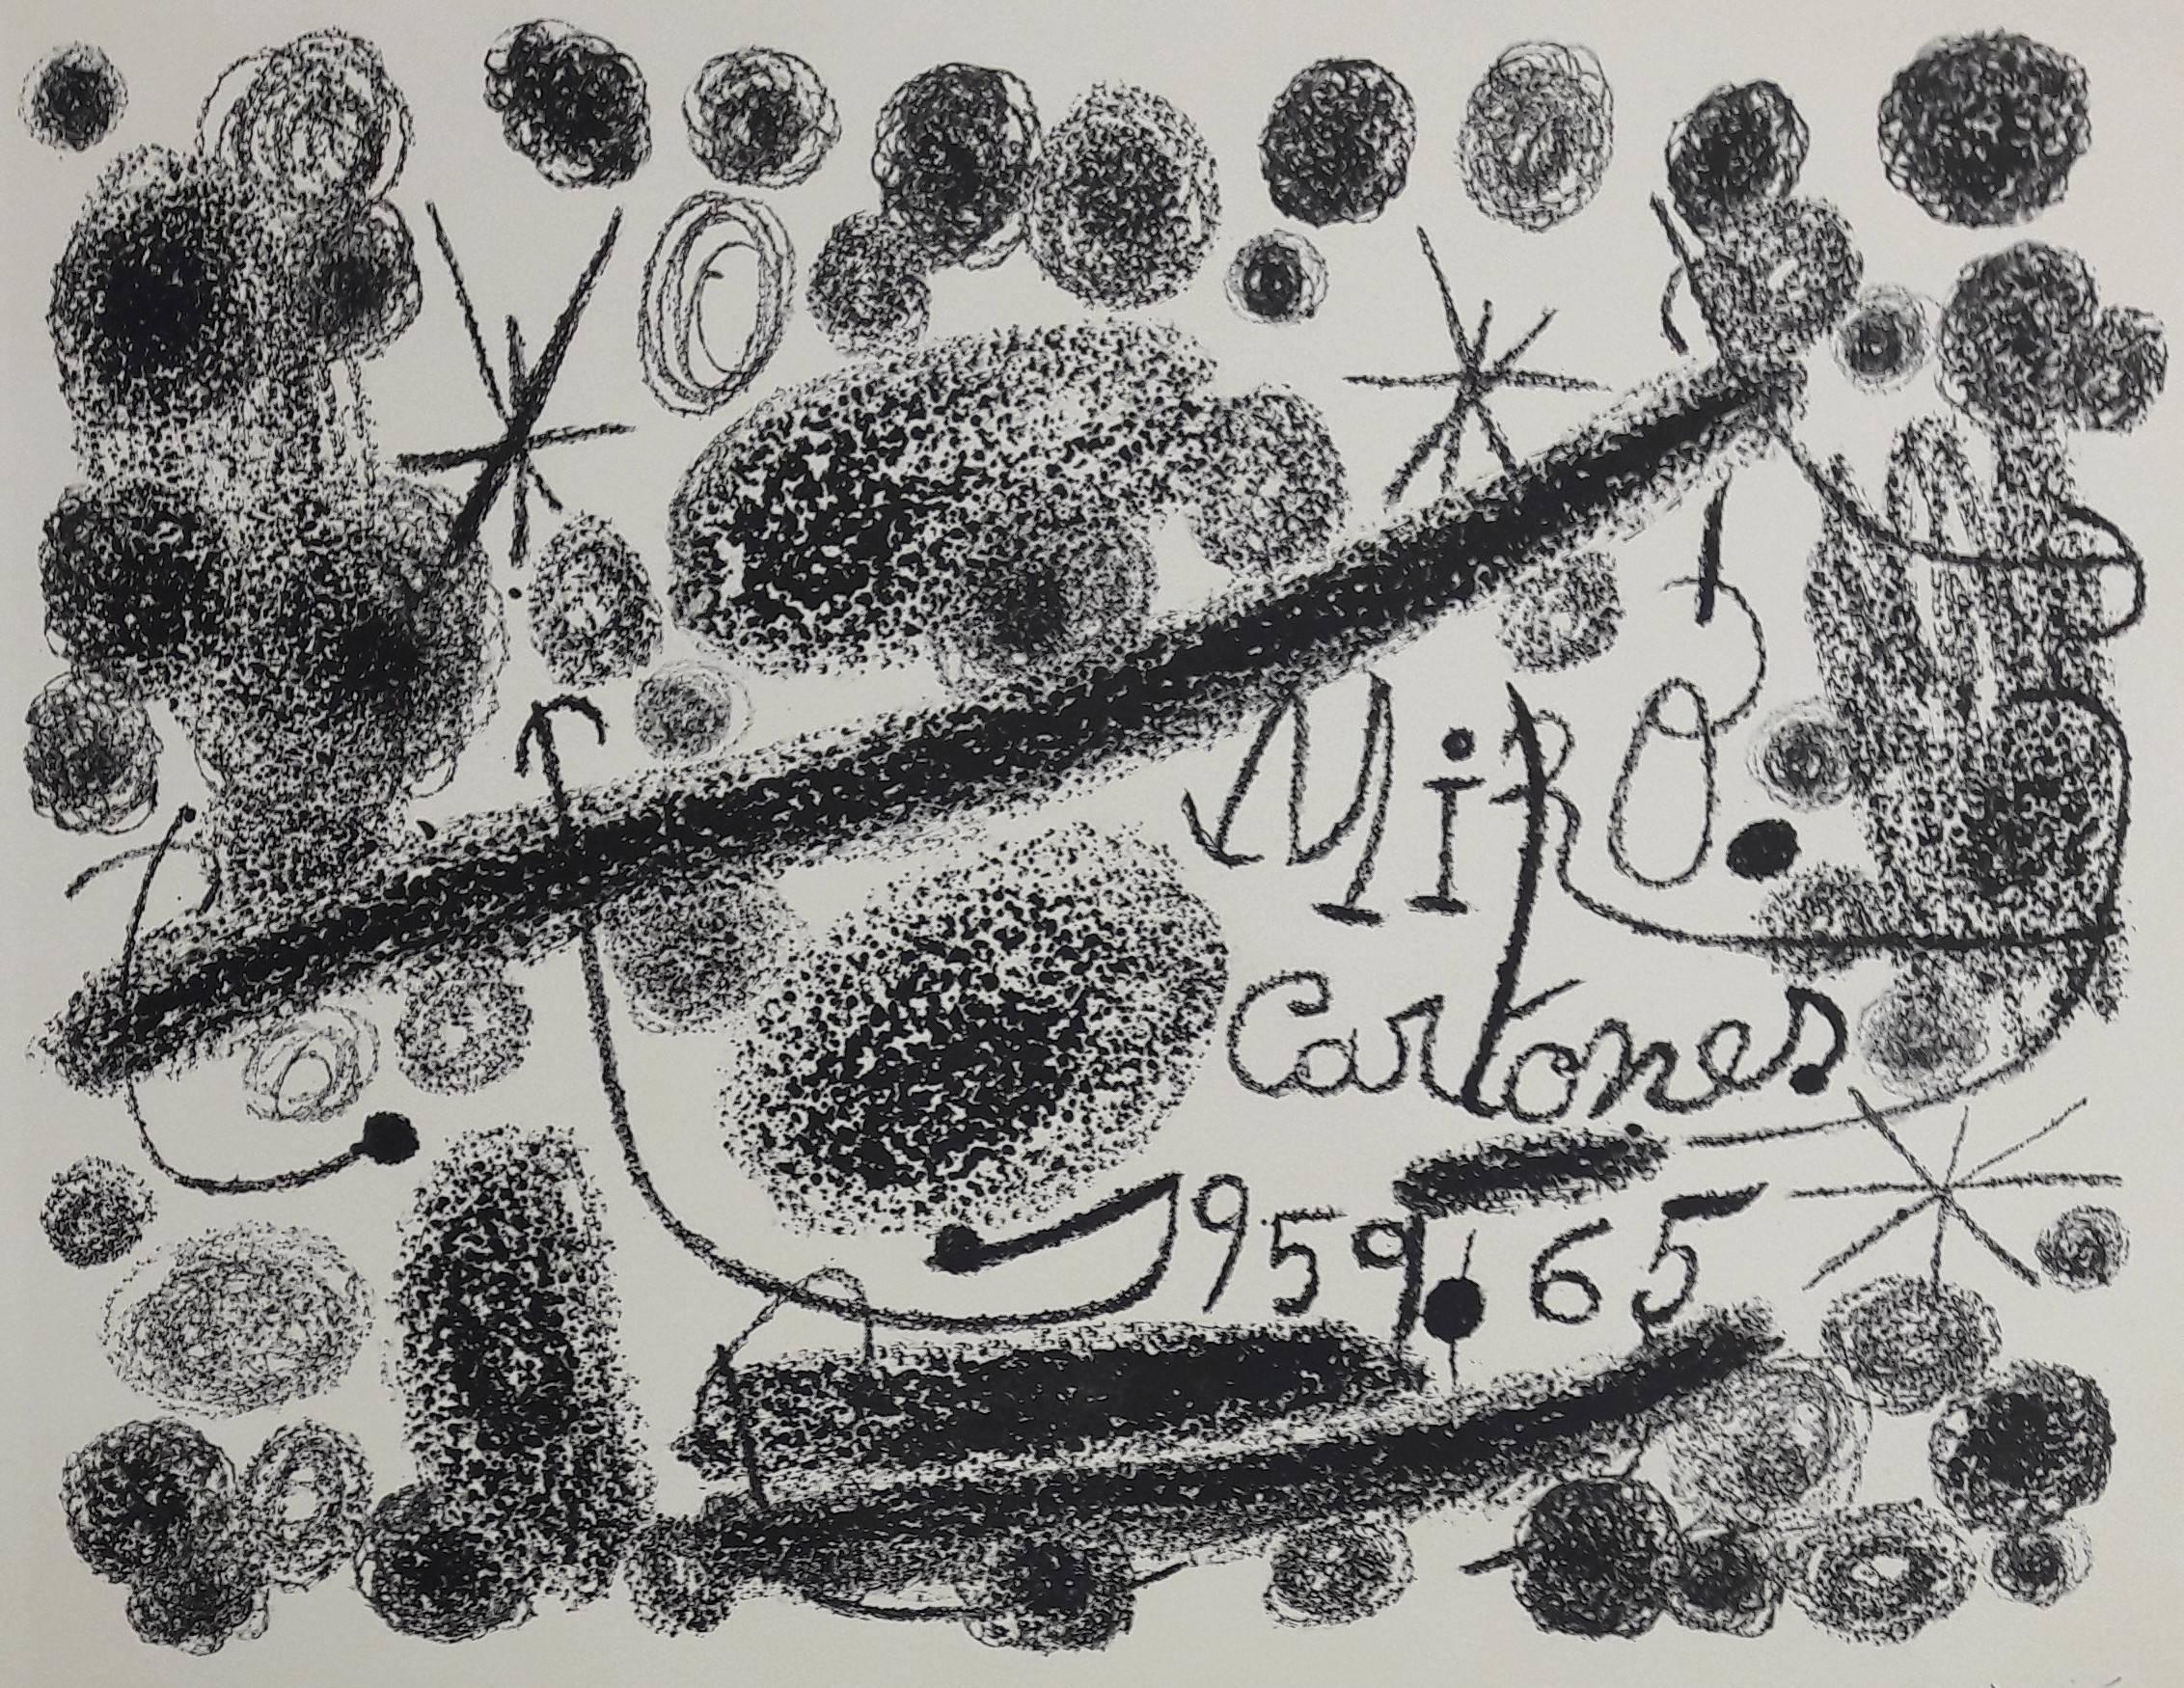 Cartones - Original Lithograph Handsigned - Print by Joan Miró